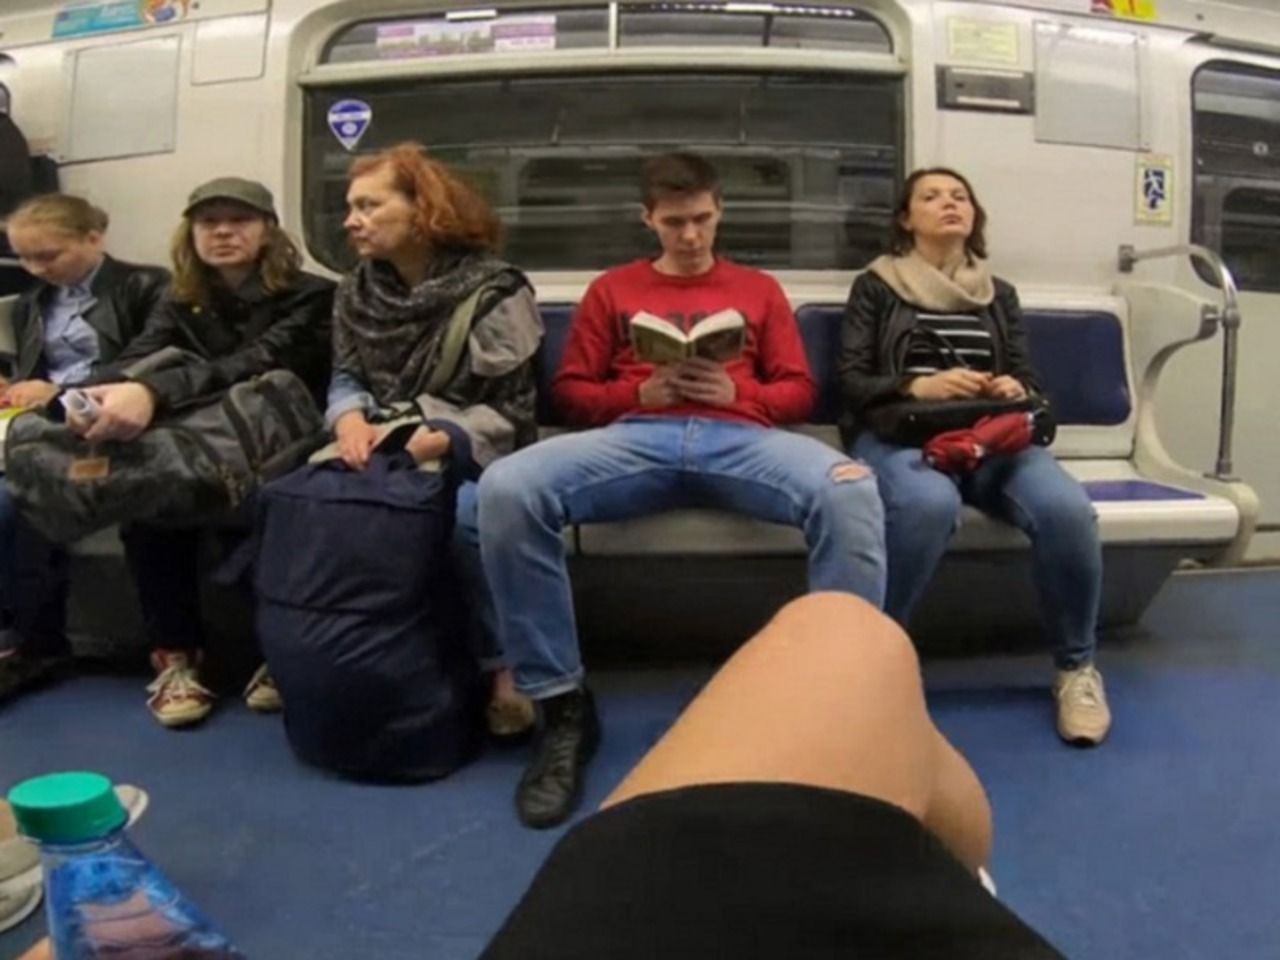 Извращенец в метро. Мужчины в метро с широко расставленными ногами. Ноги в метро.